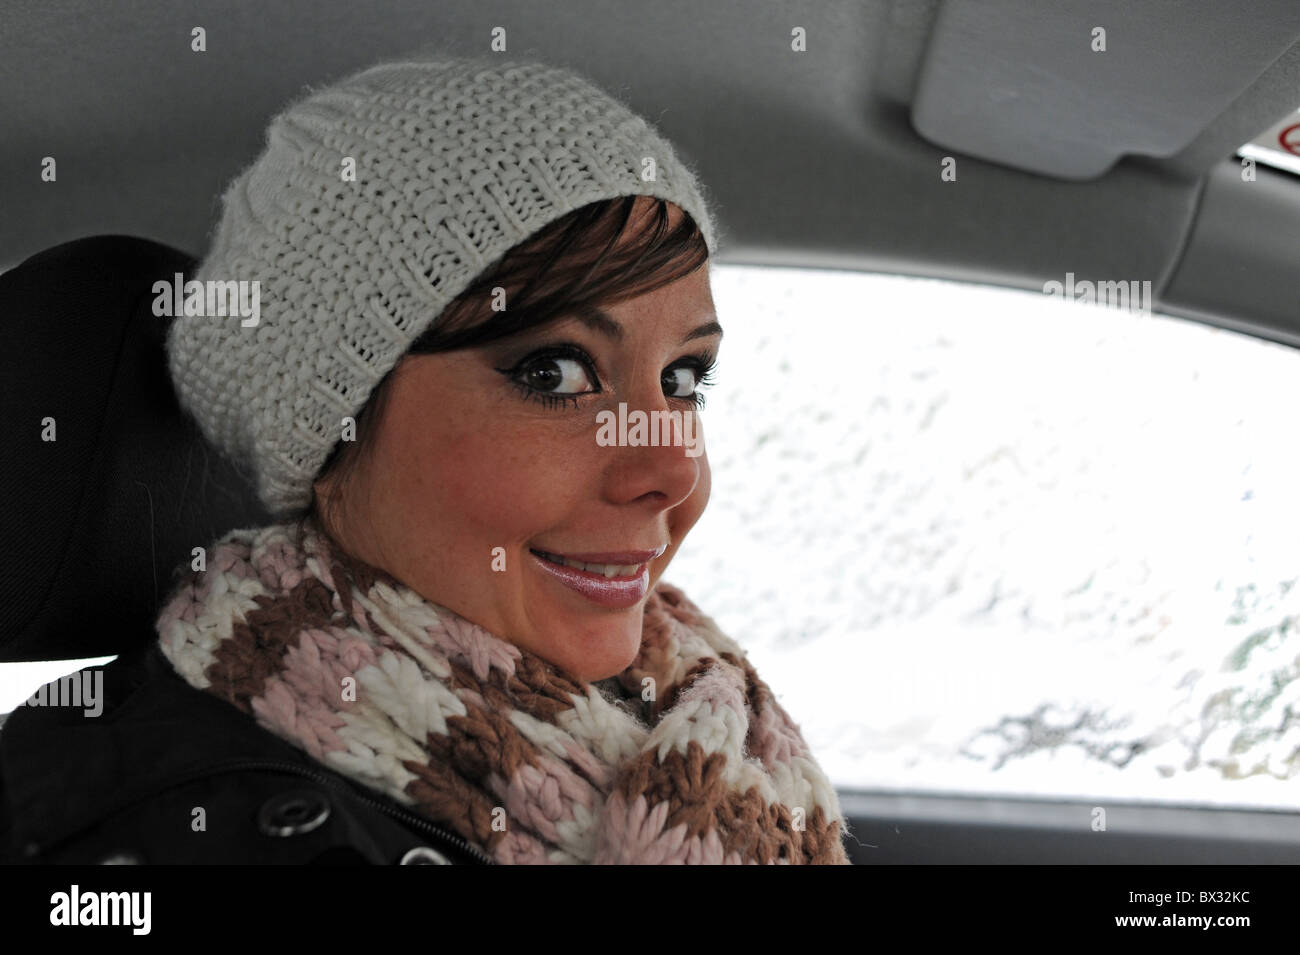 Giovane donna lampeggia grandi occhi in telecamera indossando lanosi beret style hat Foto Stock